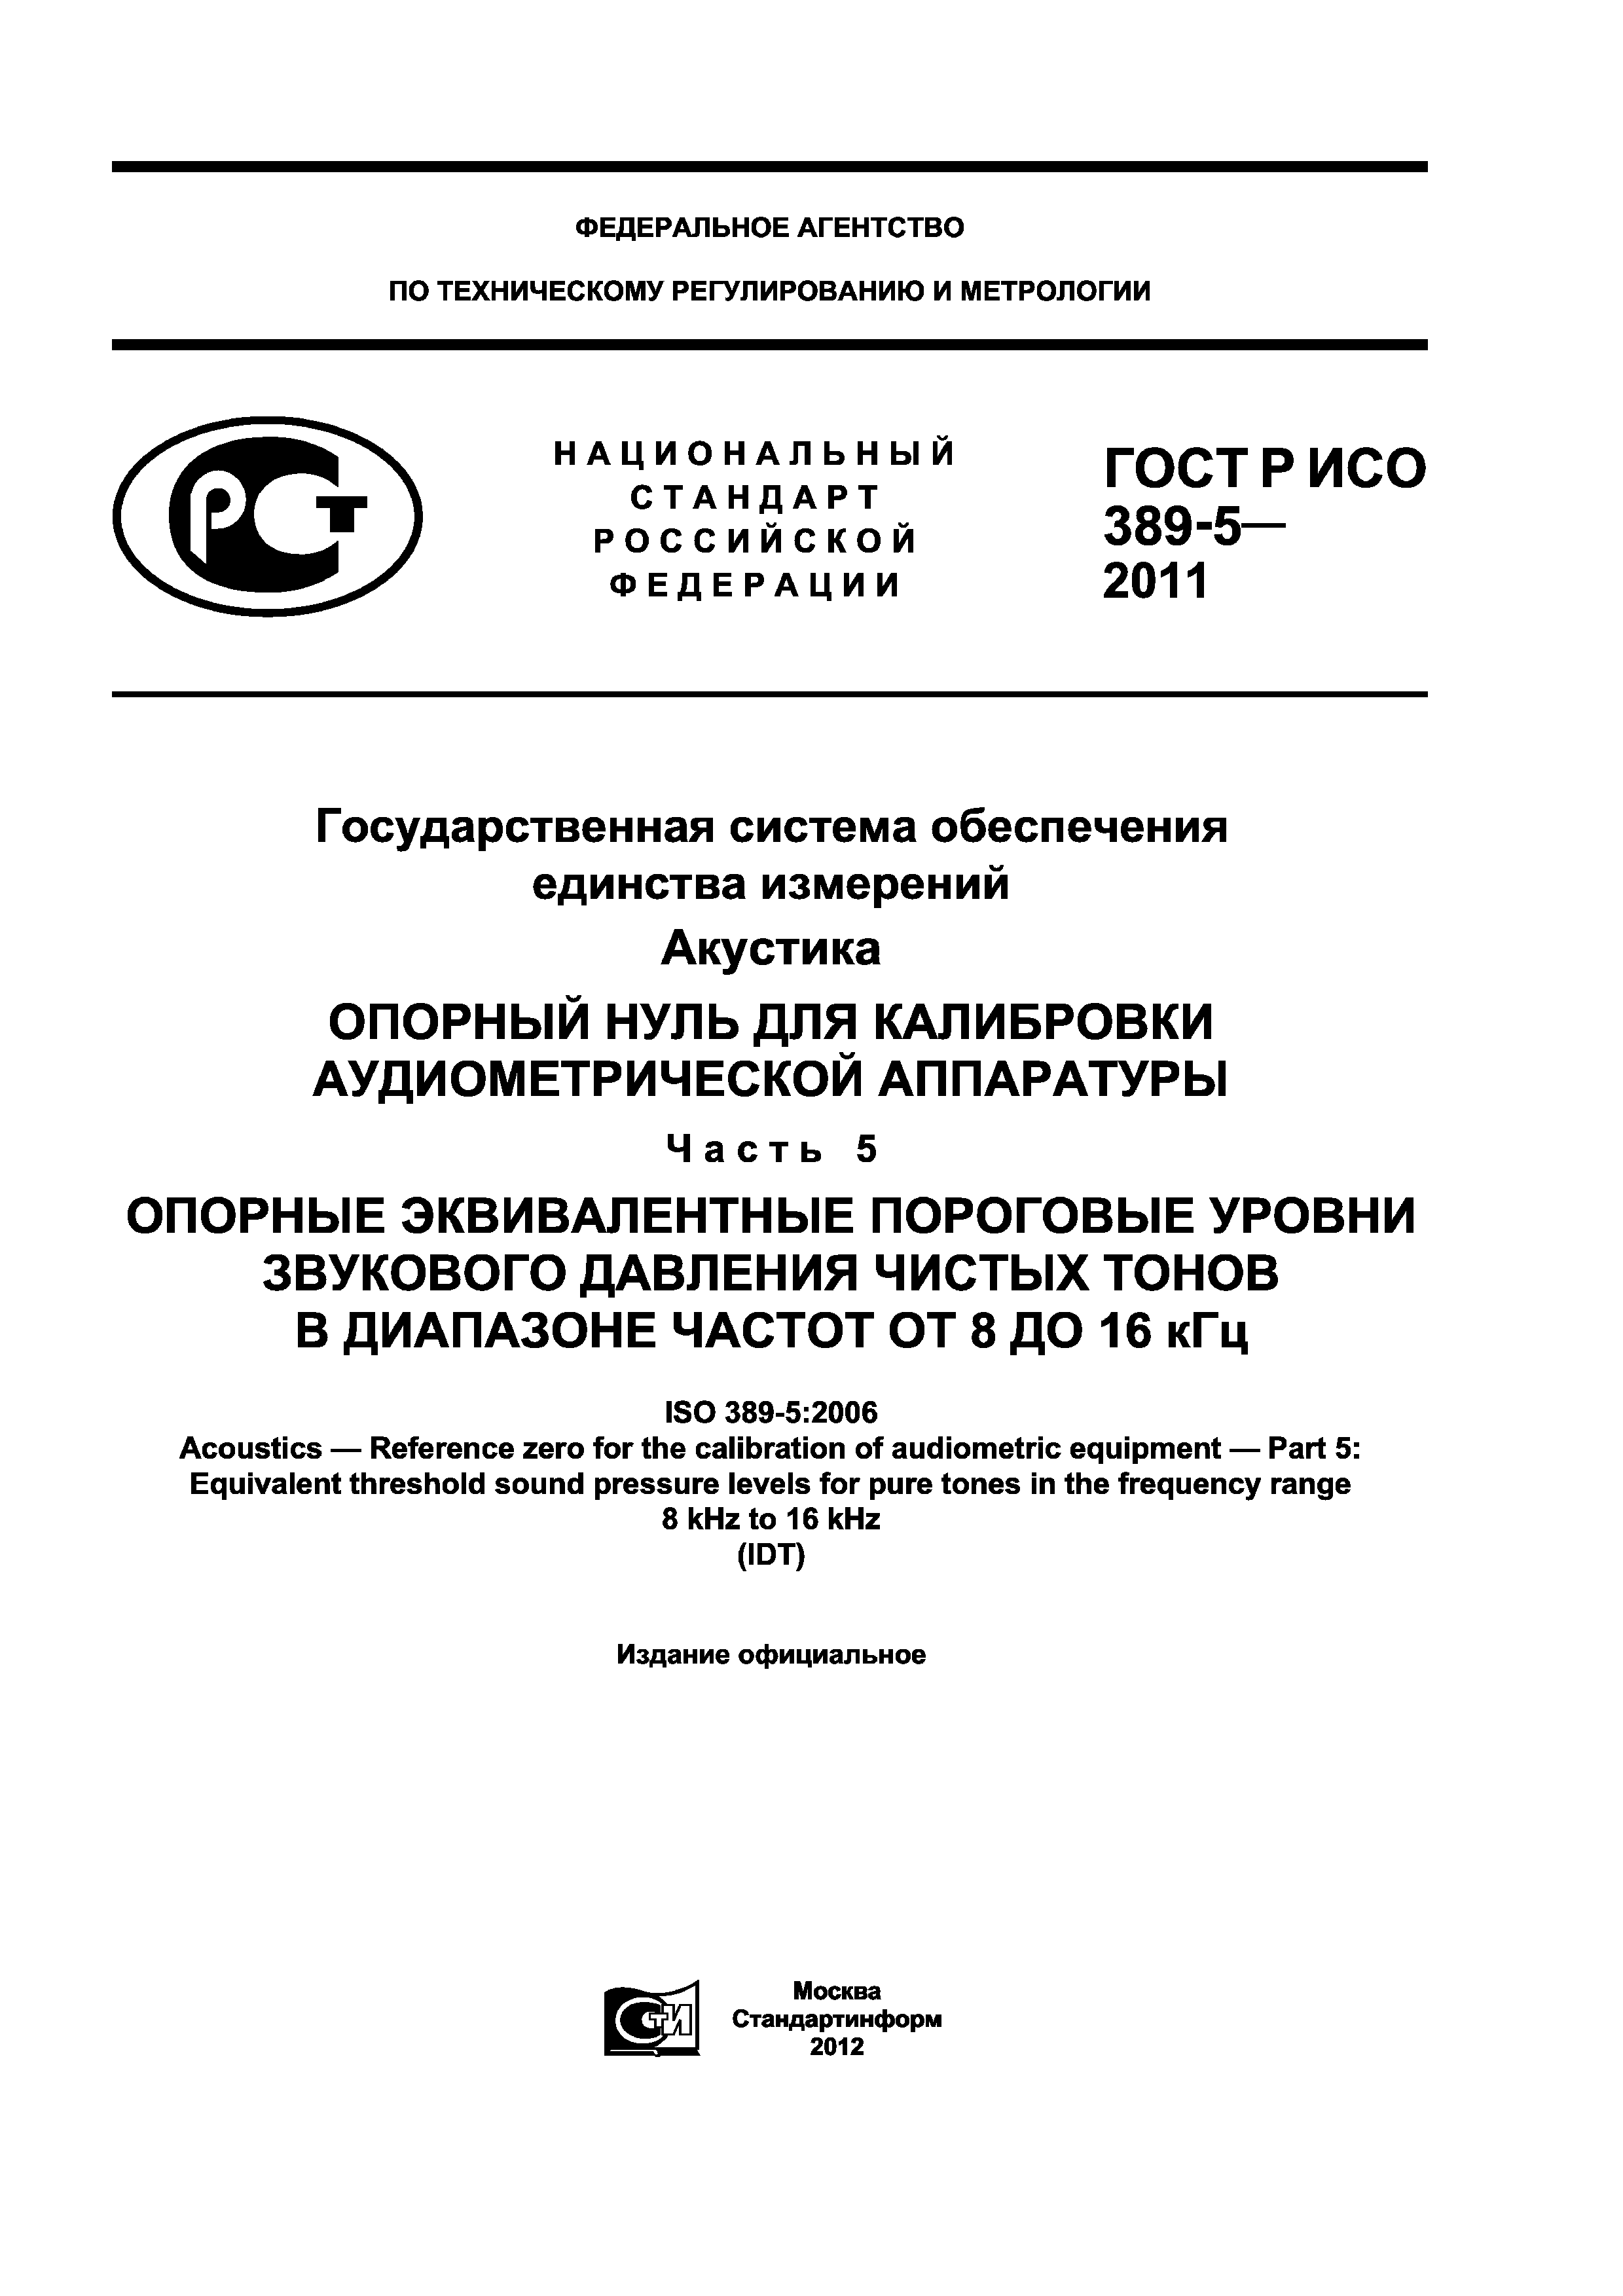 ГОСТ Р ИСО 389-5-2011